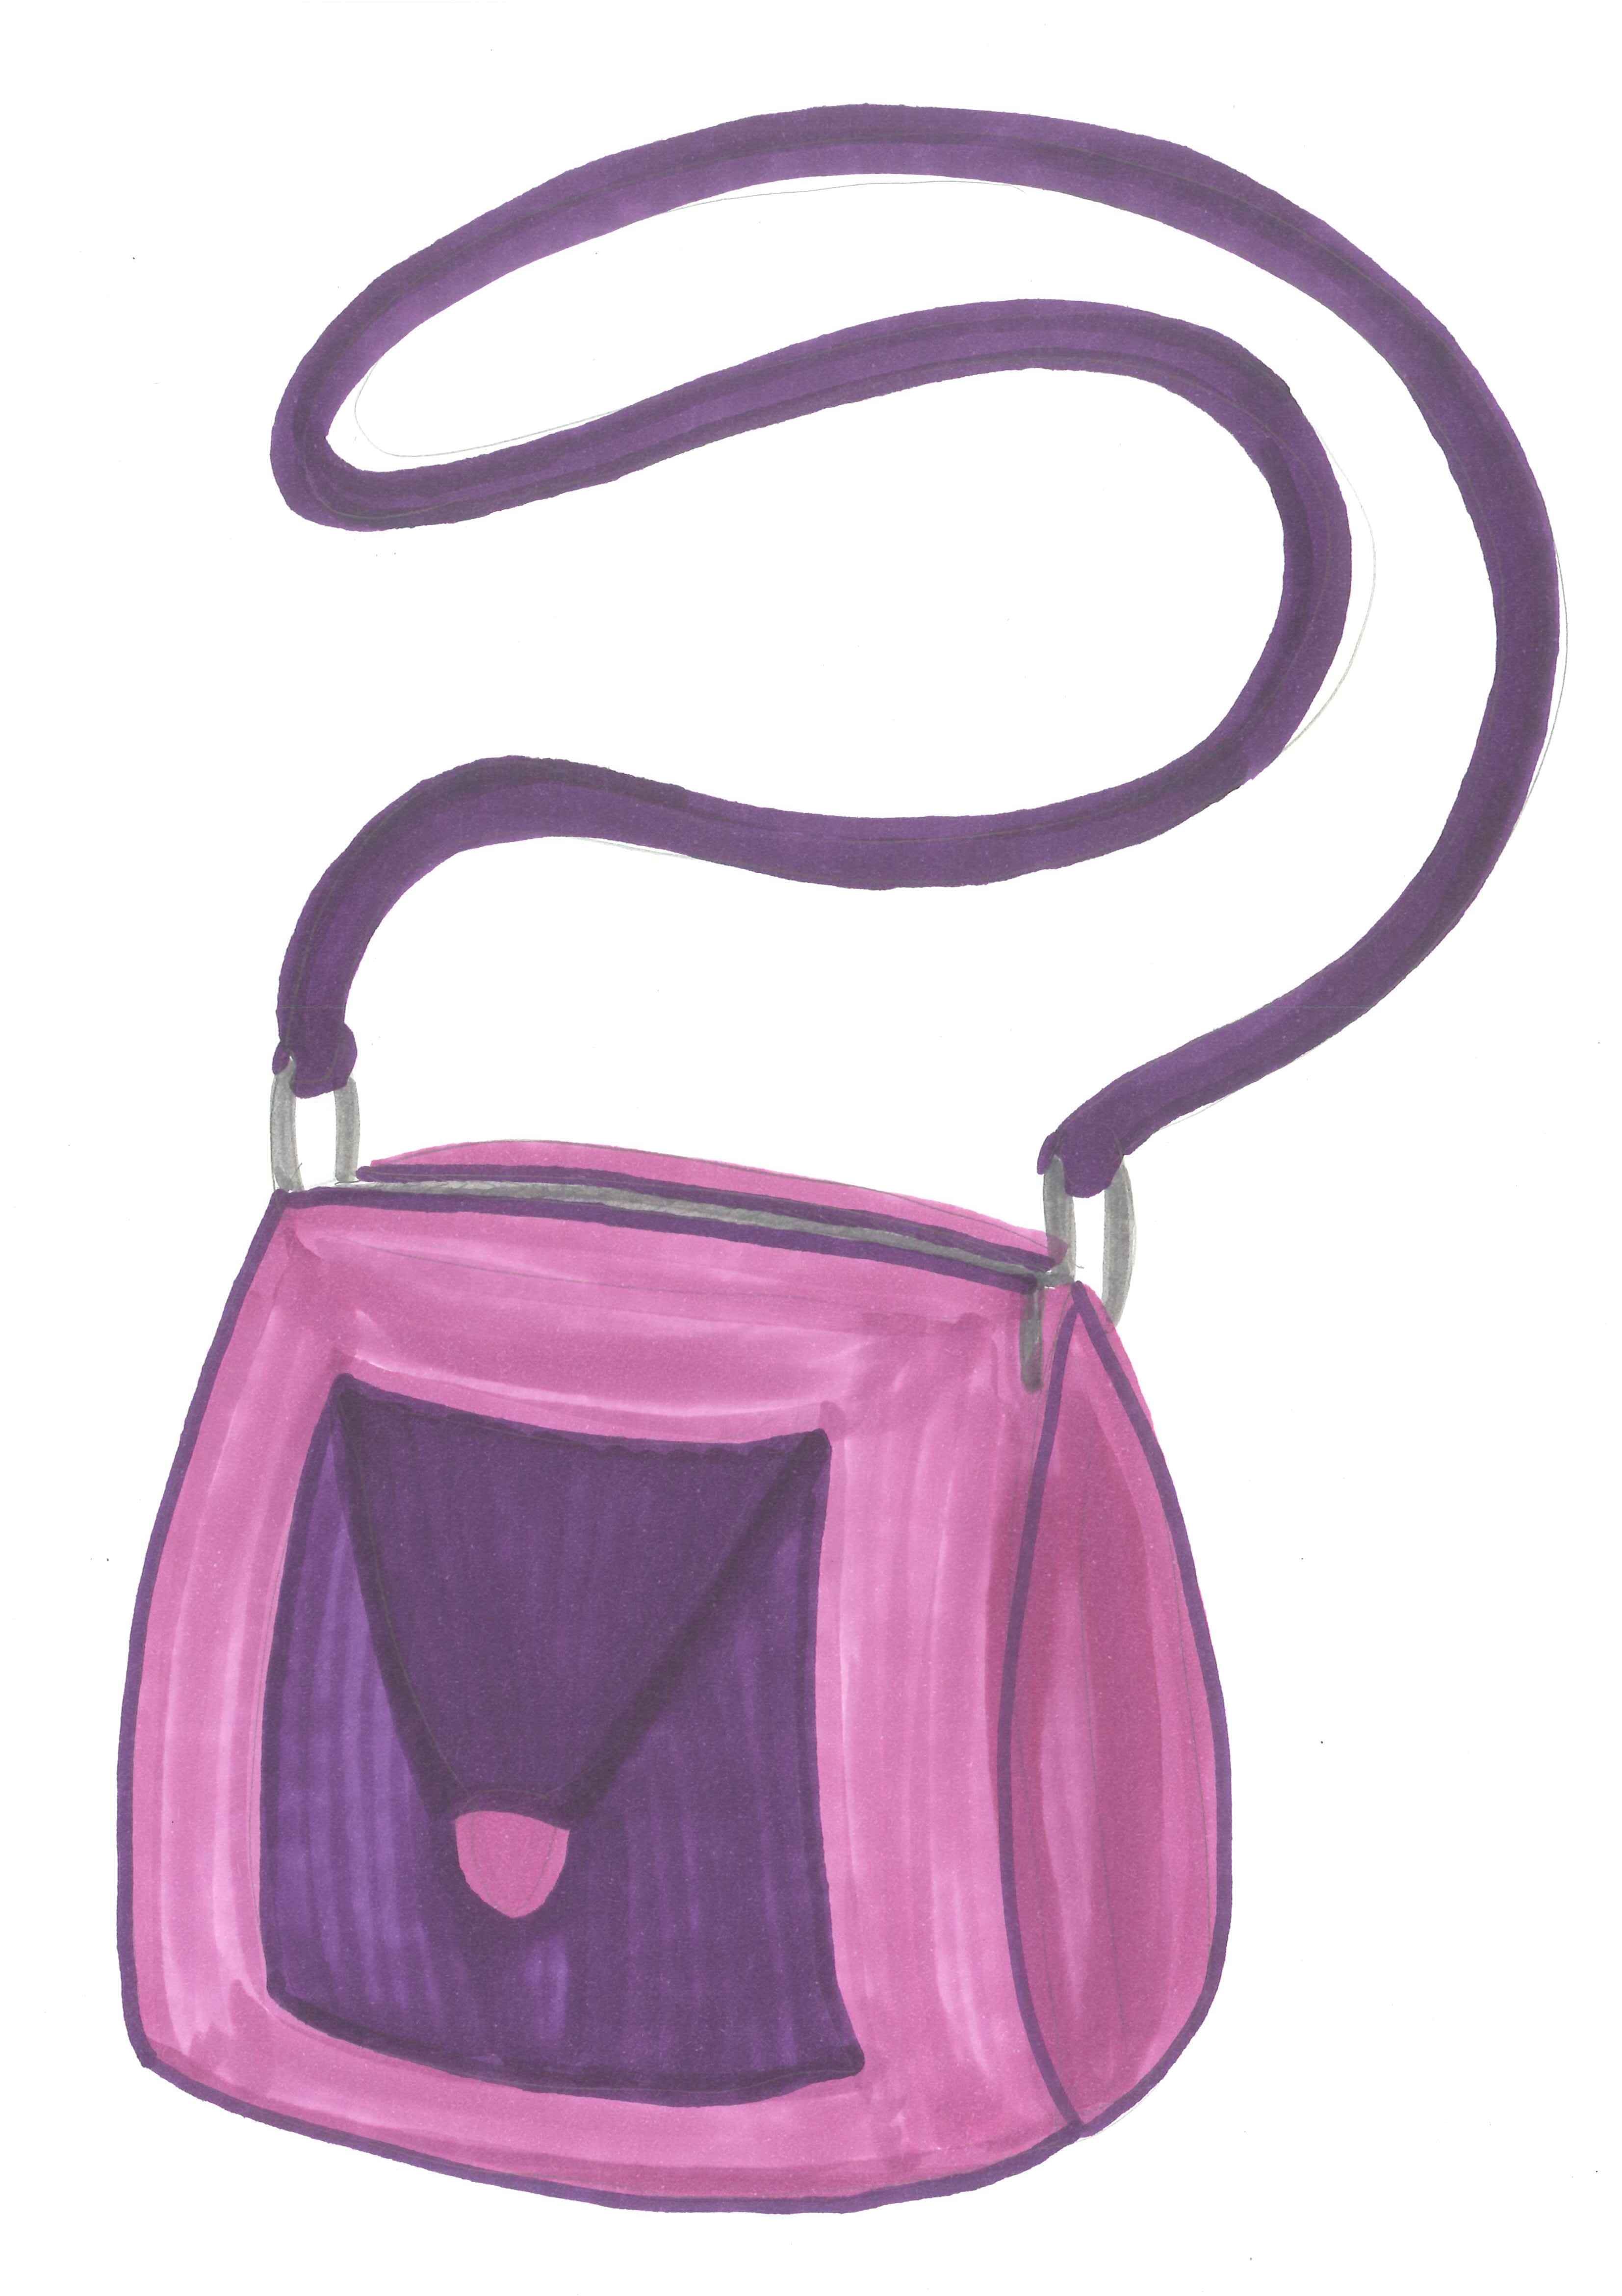 Handbag Clip Art - Cliparts.co